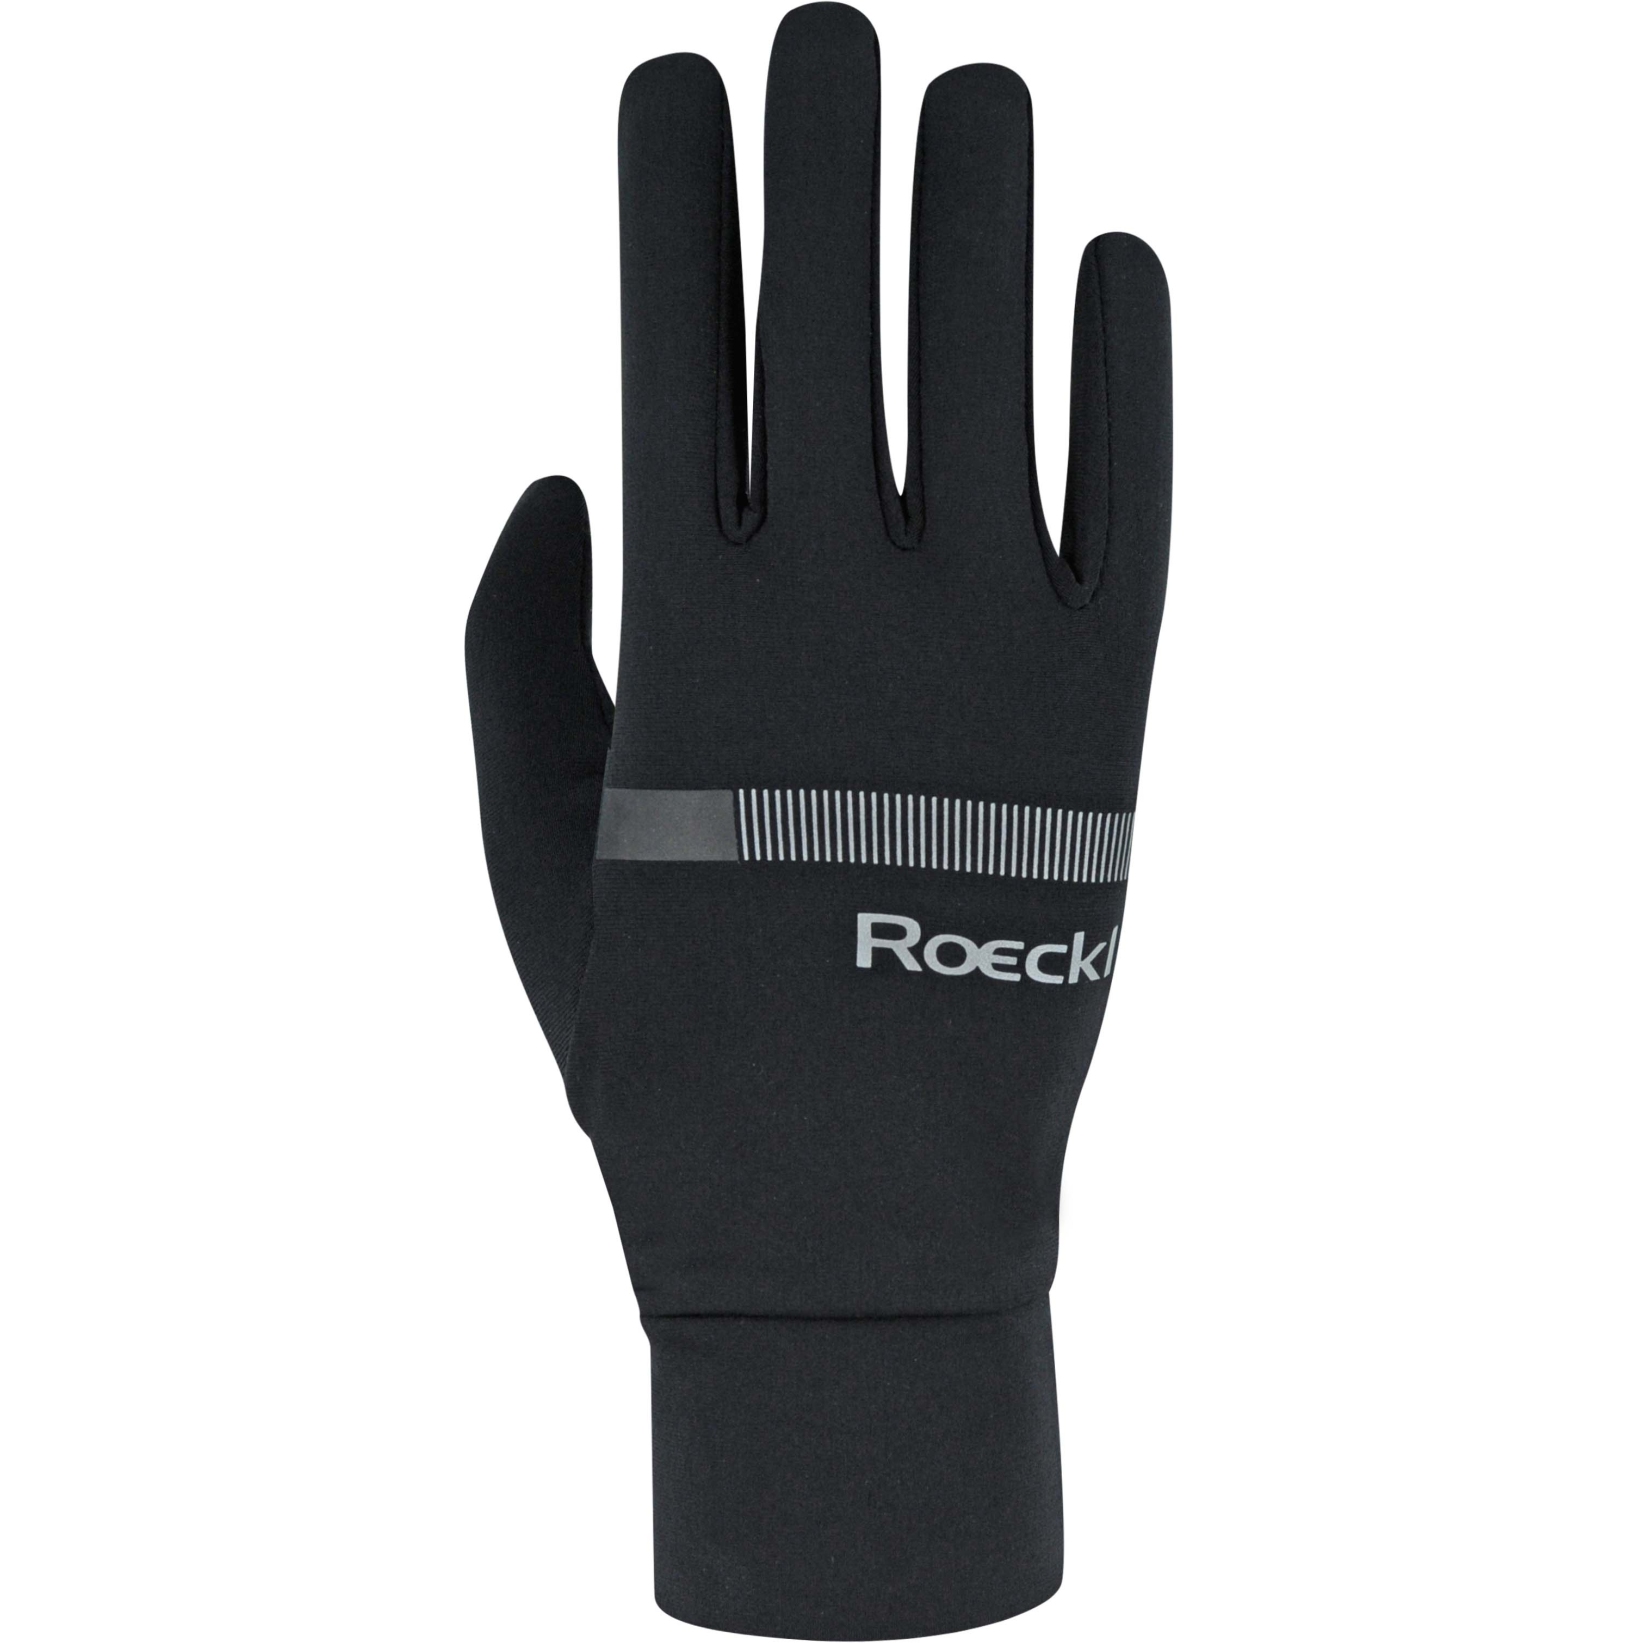 Produktbild von Roeckl Sports Kohlberg Winterhandschuhe - schwarz 9000